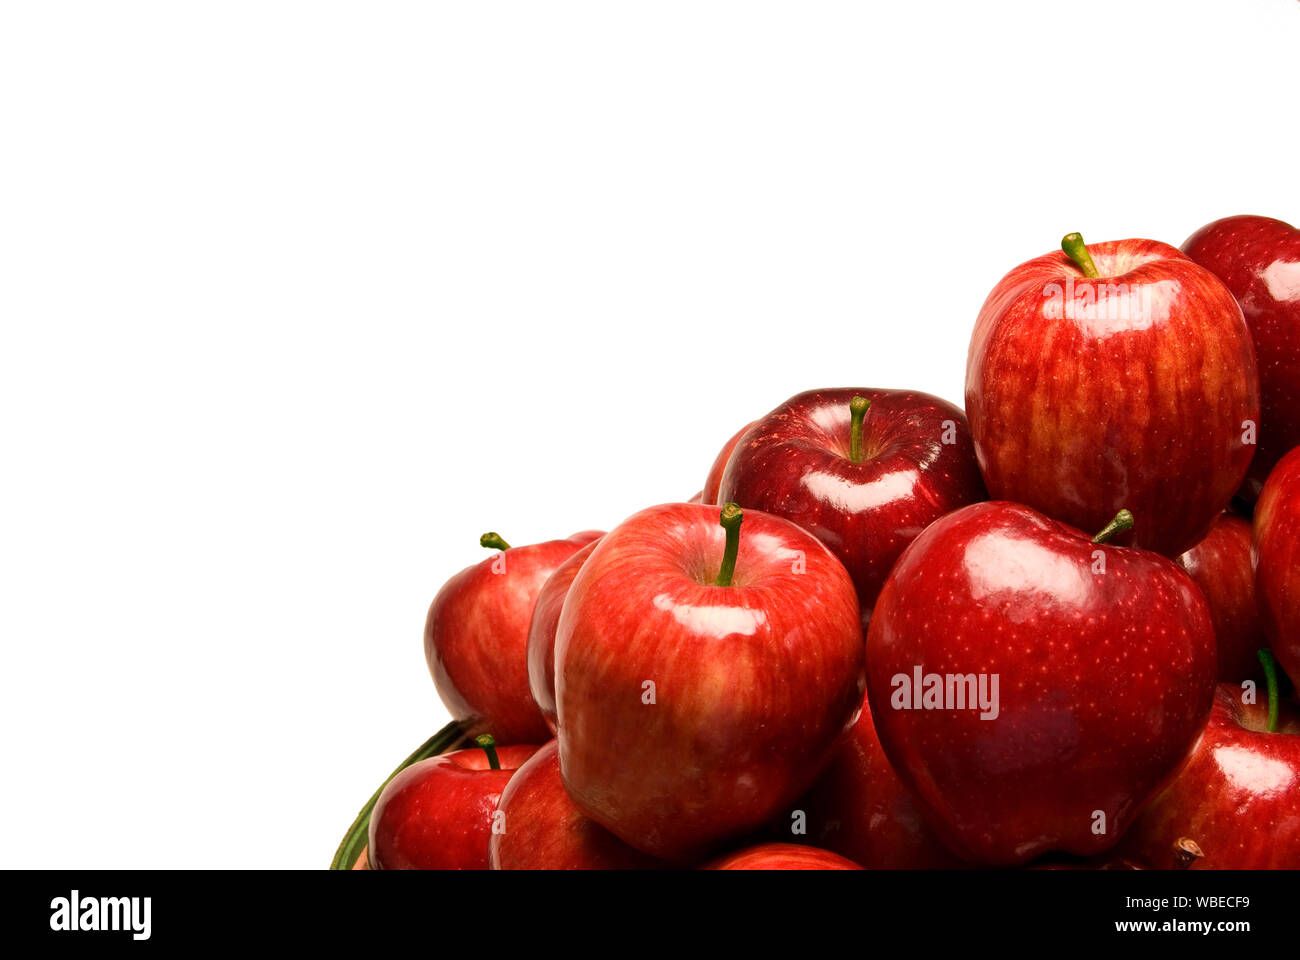 Inquadratura orizzontale di un gruppo di brillanti le mele rosse nell'angolo inferiore destro dell'immagine. Sfondo bianco con copia spazio. Foto Stock